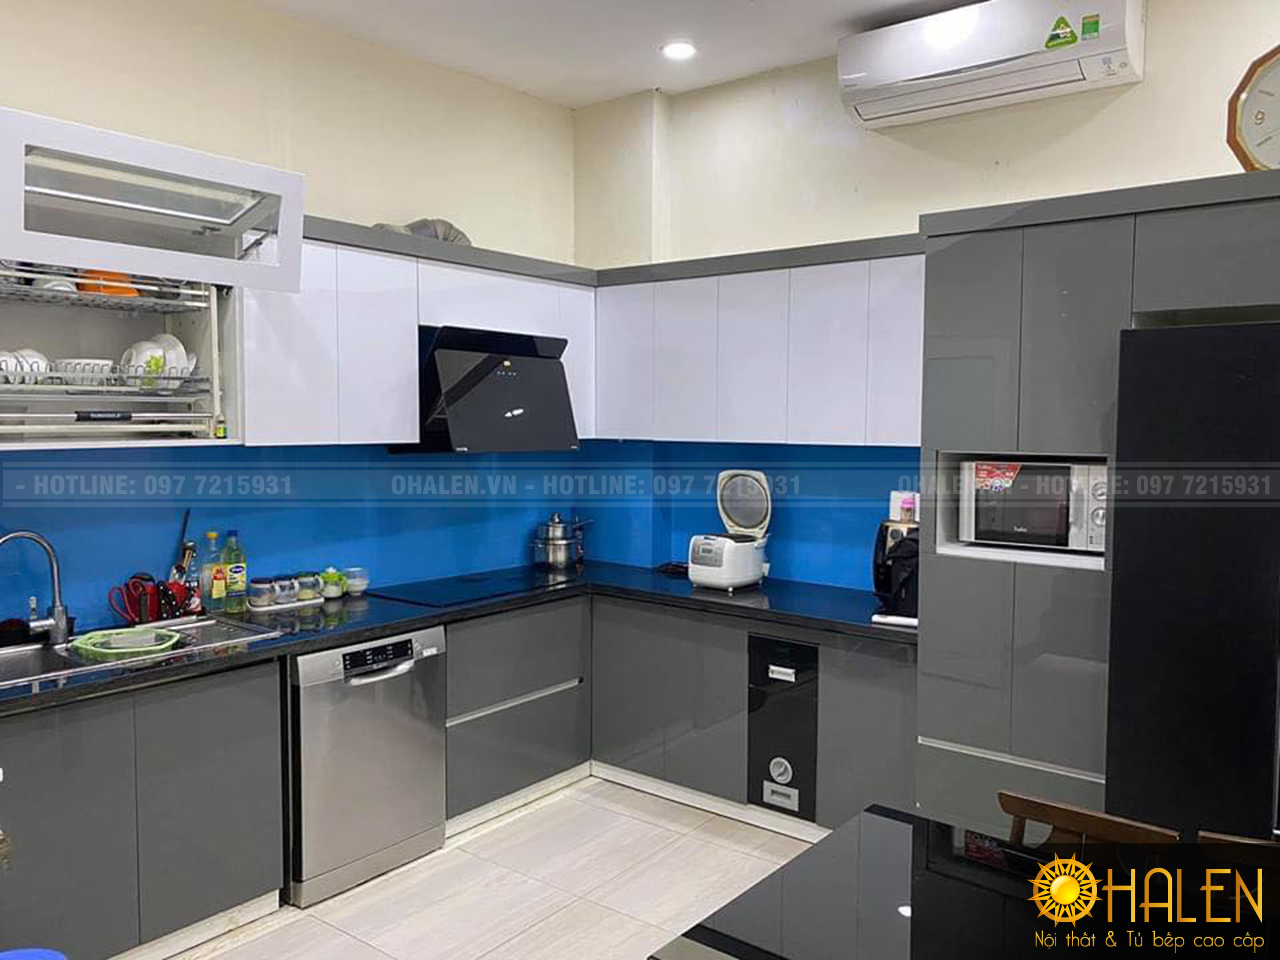 Tủ bếp kính màu xanh dương nổi bật và làm bừng cả không gian bếp